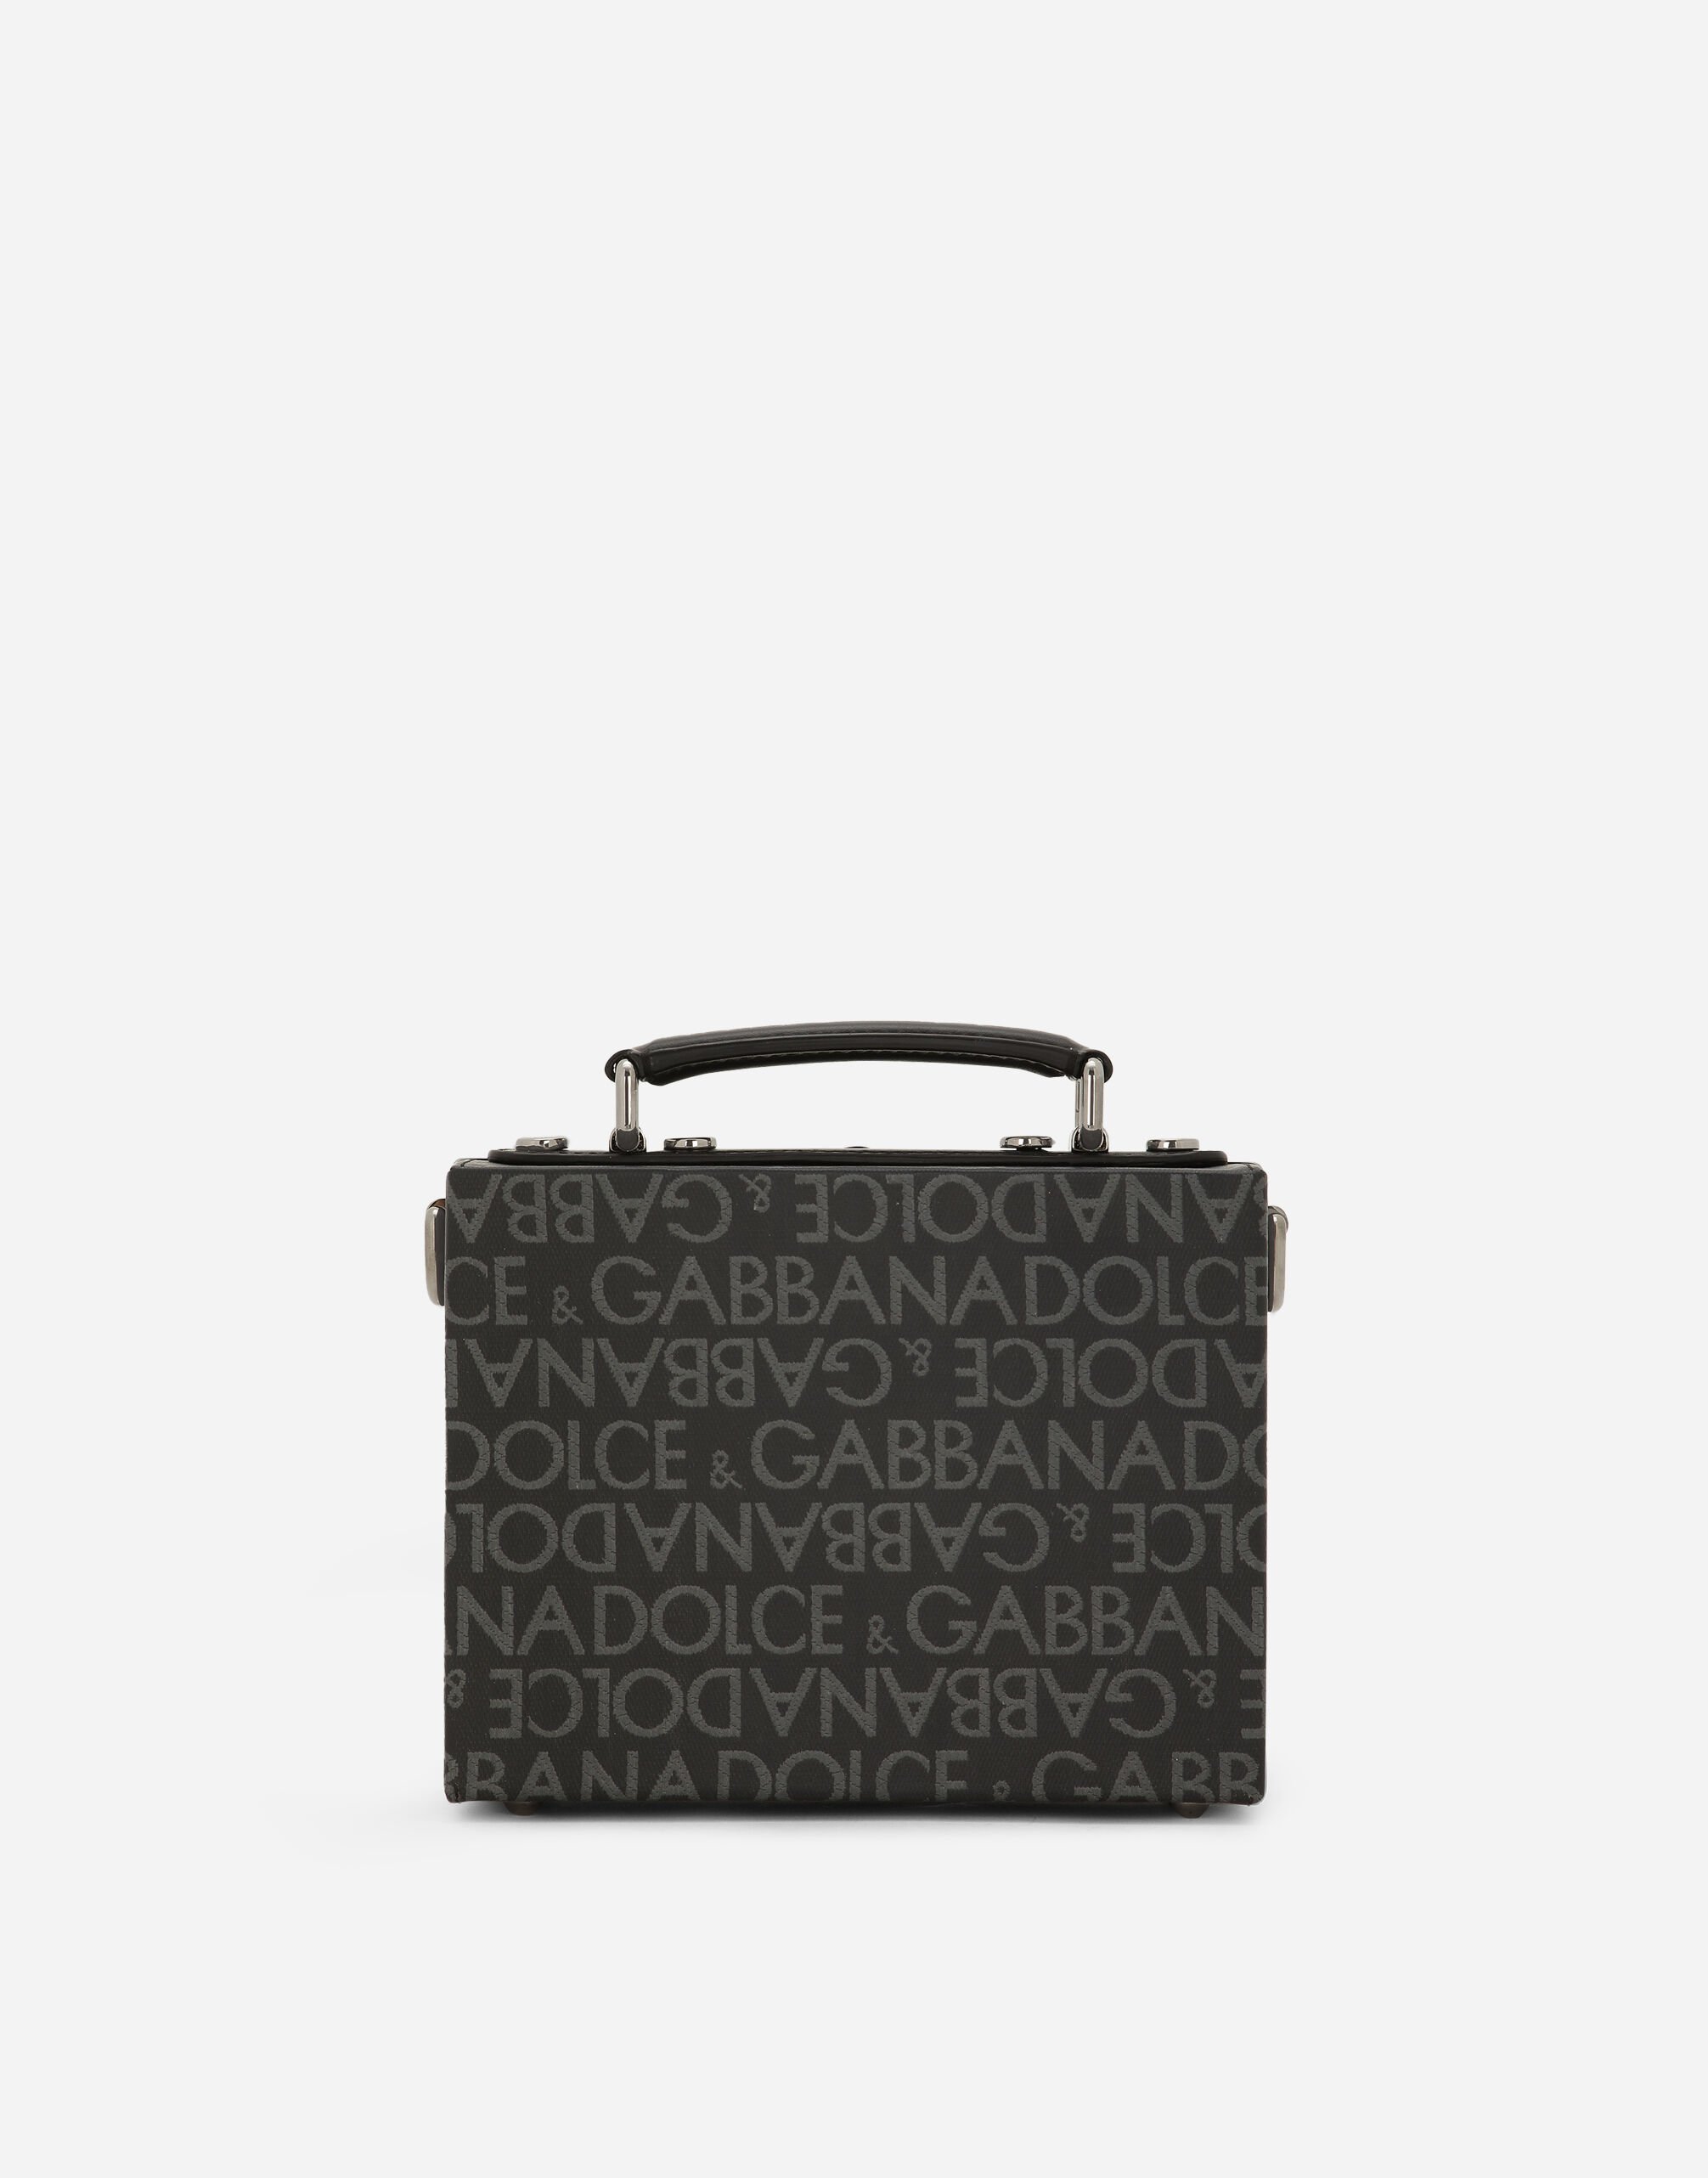 Dolce & Gabbana Tasche Box aus beschichtetem Jacquard Braun BM3004A1275